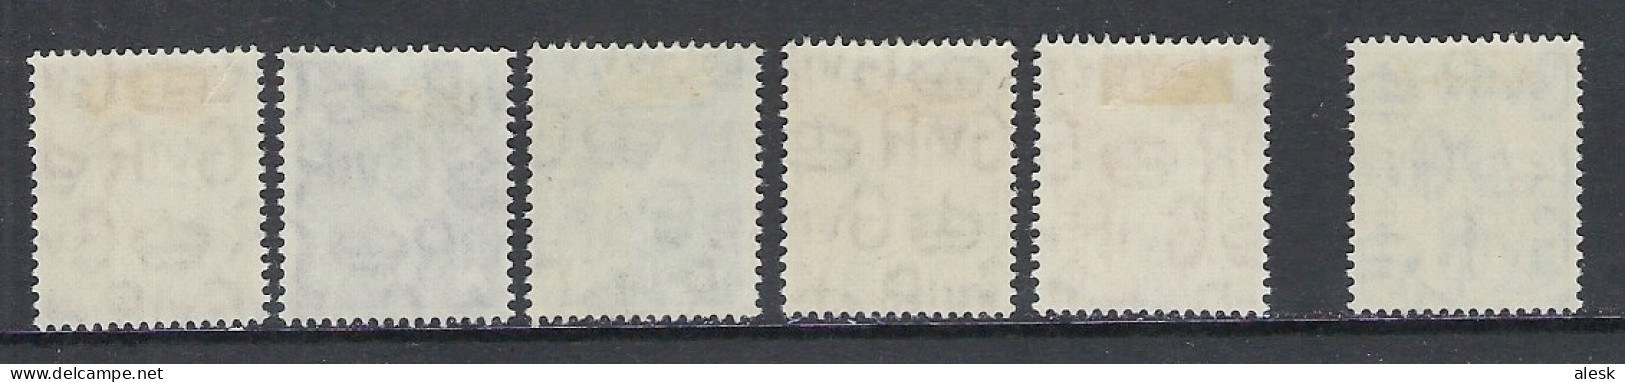 GRANDE-BRETAGNE 1951 - Série N°241 à 255 + 250 (y&t) Avec Charnière - Nuevos